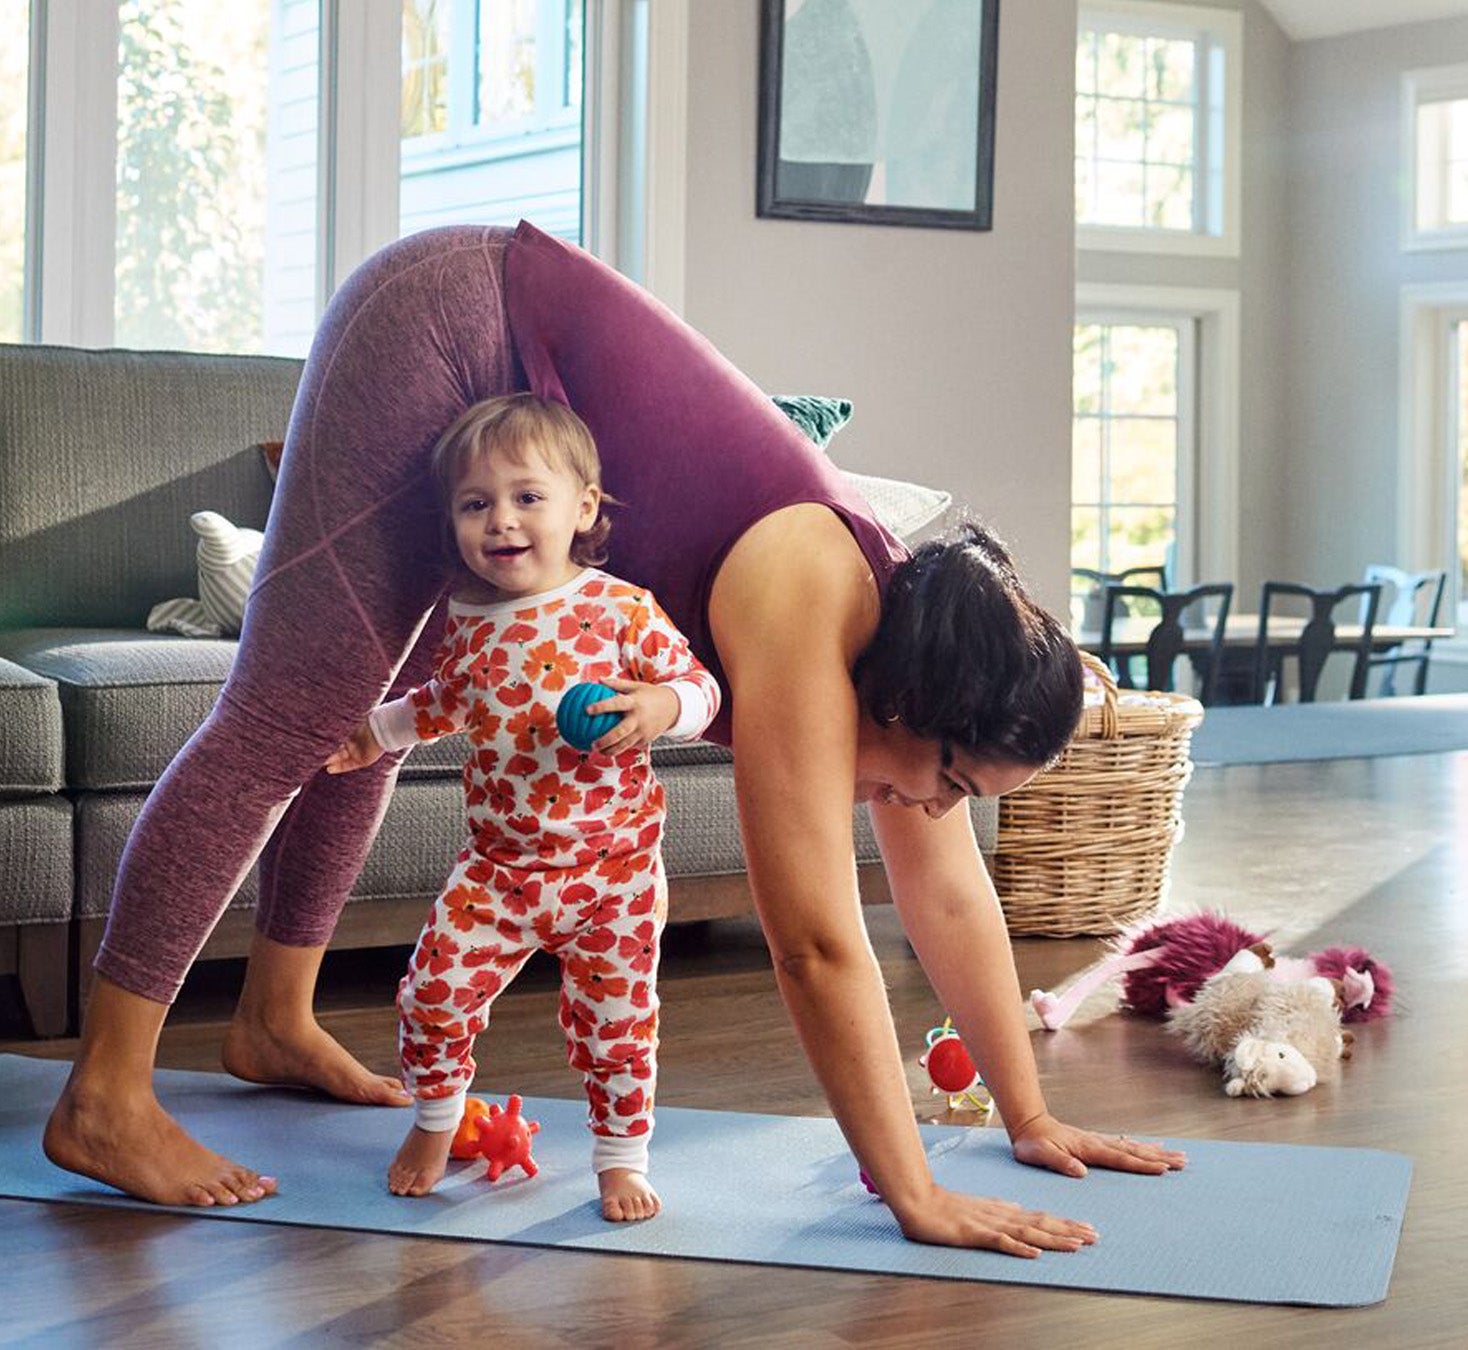 Frau macht Yoga und kleines Kind spielt daneben